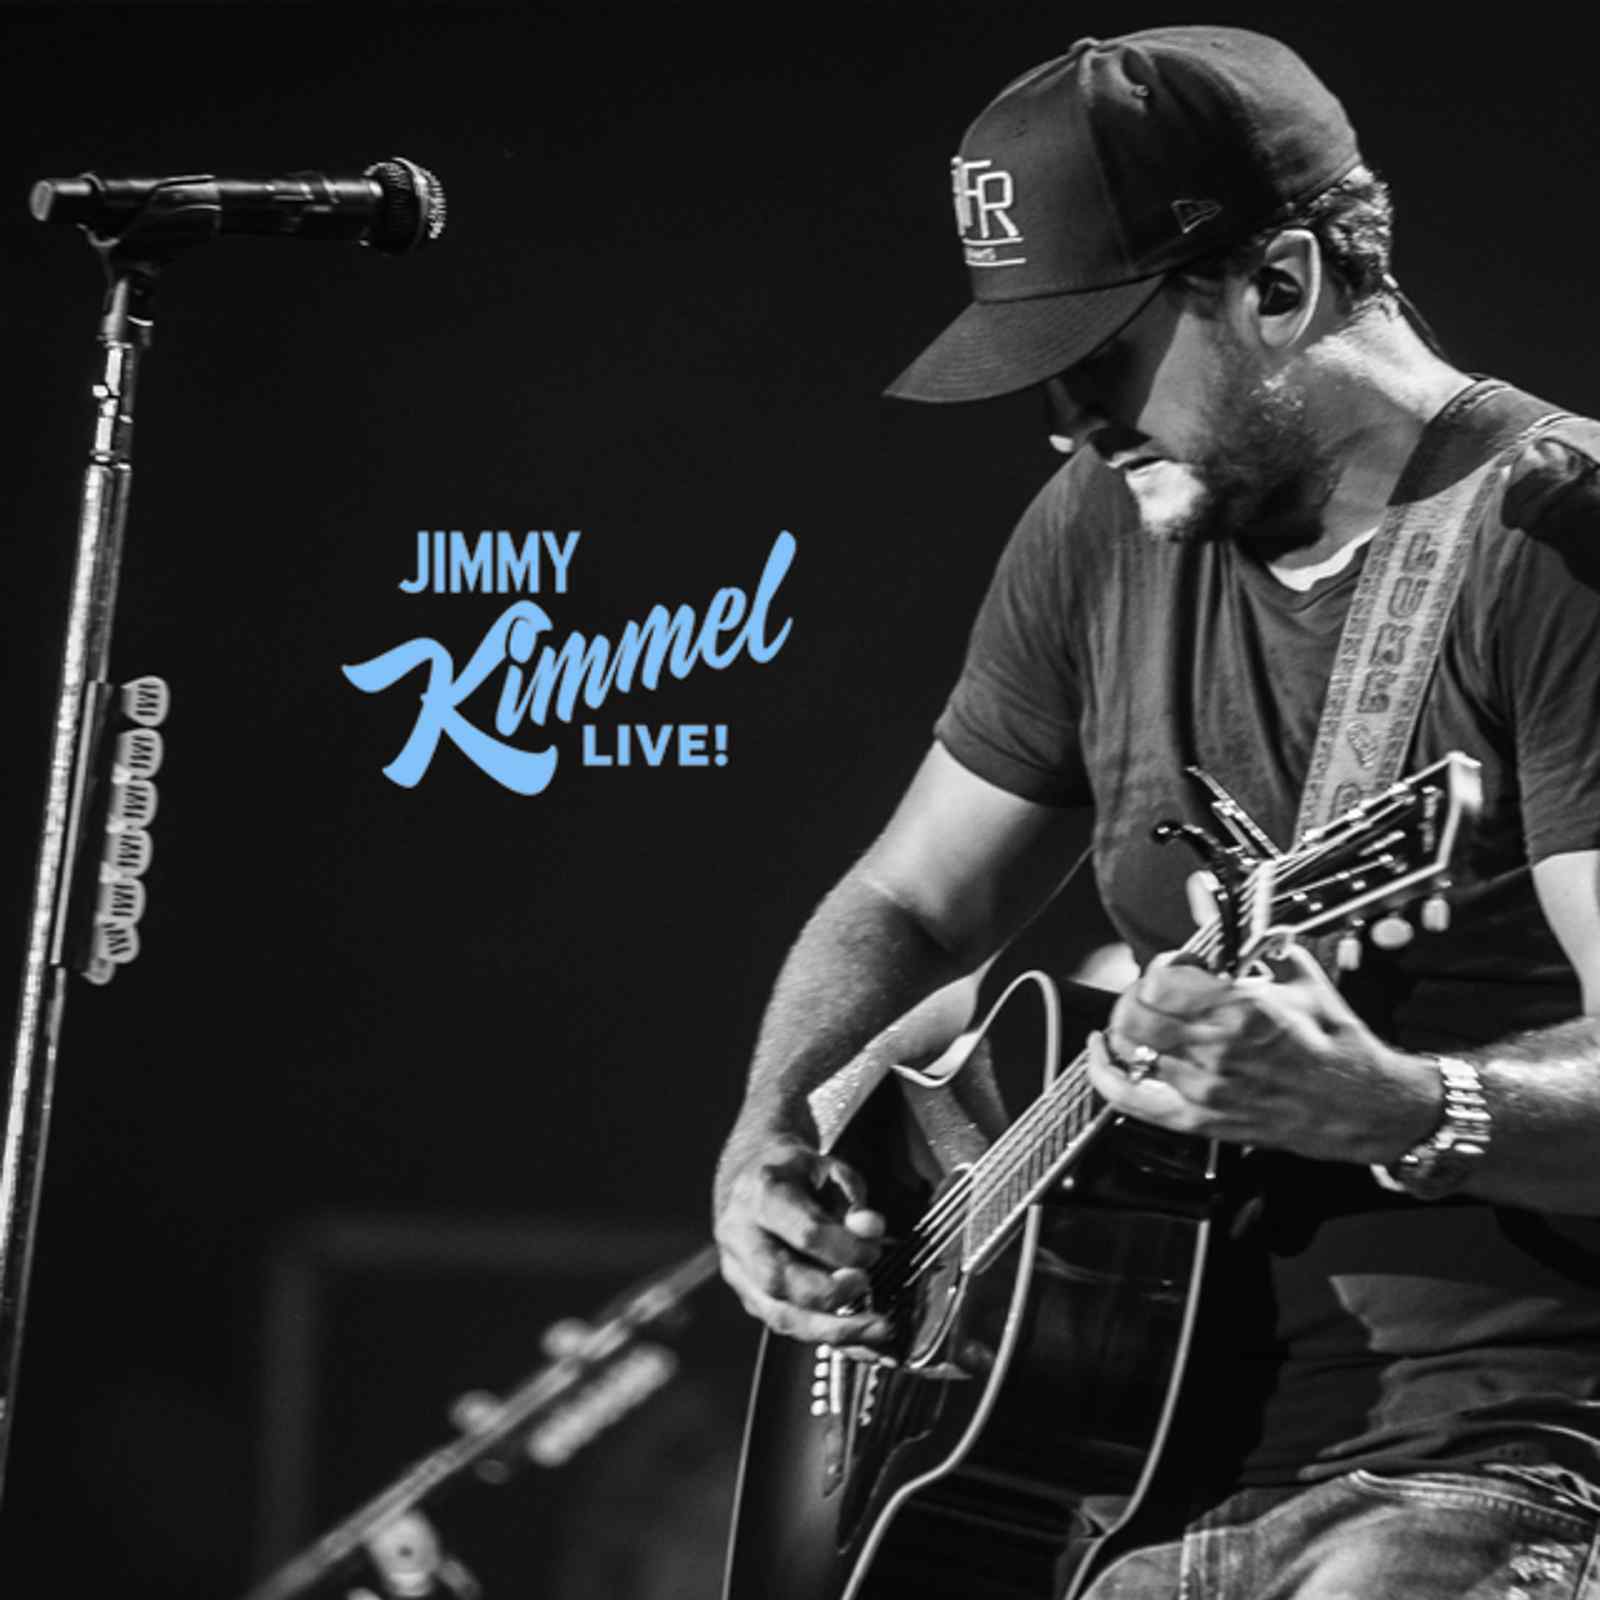 TUNE-IN: Luke Bryan on "Jimmy Kimmel Live!" Tonight!